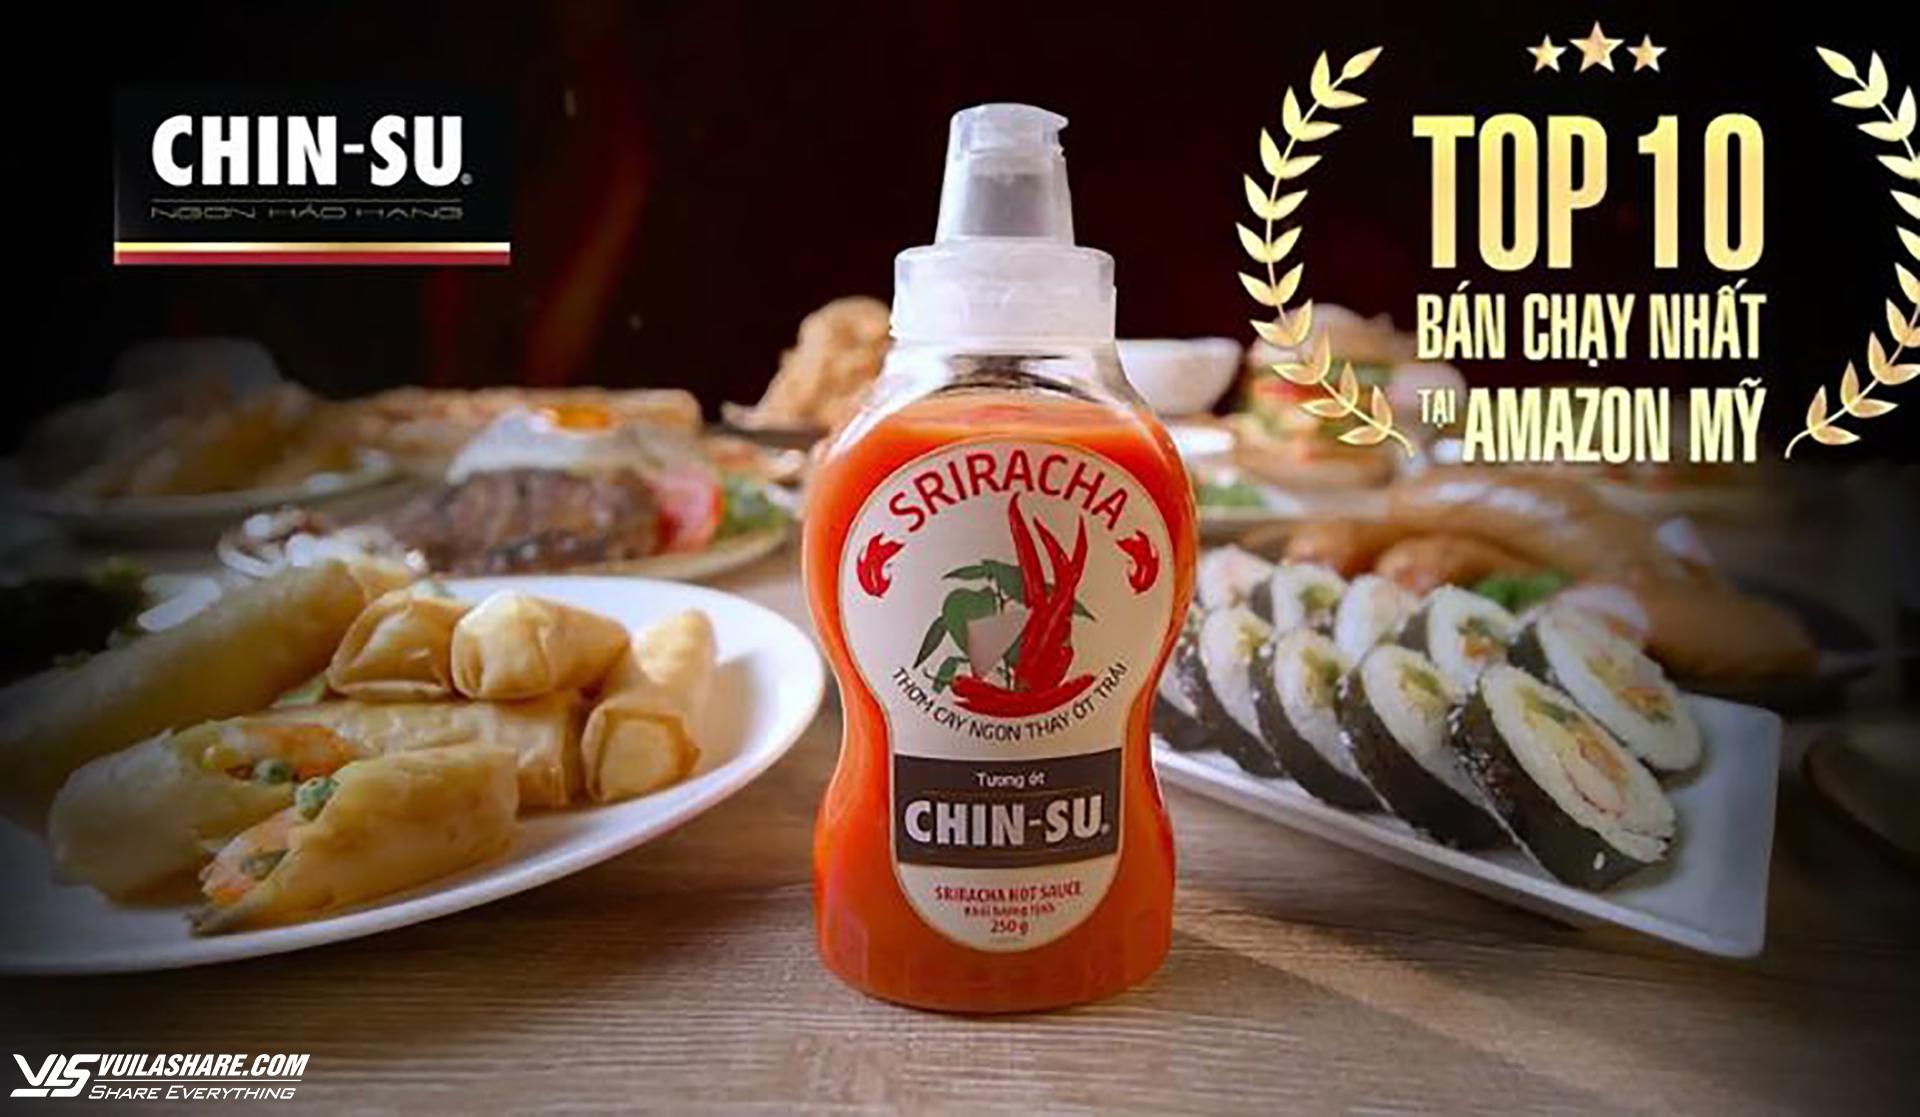 Tương ớt CHIN-SU đạt top 10 bán chạy trên Amazon